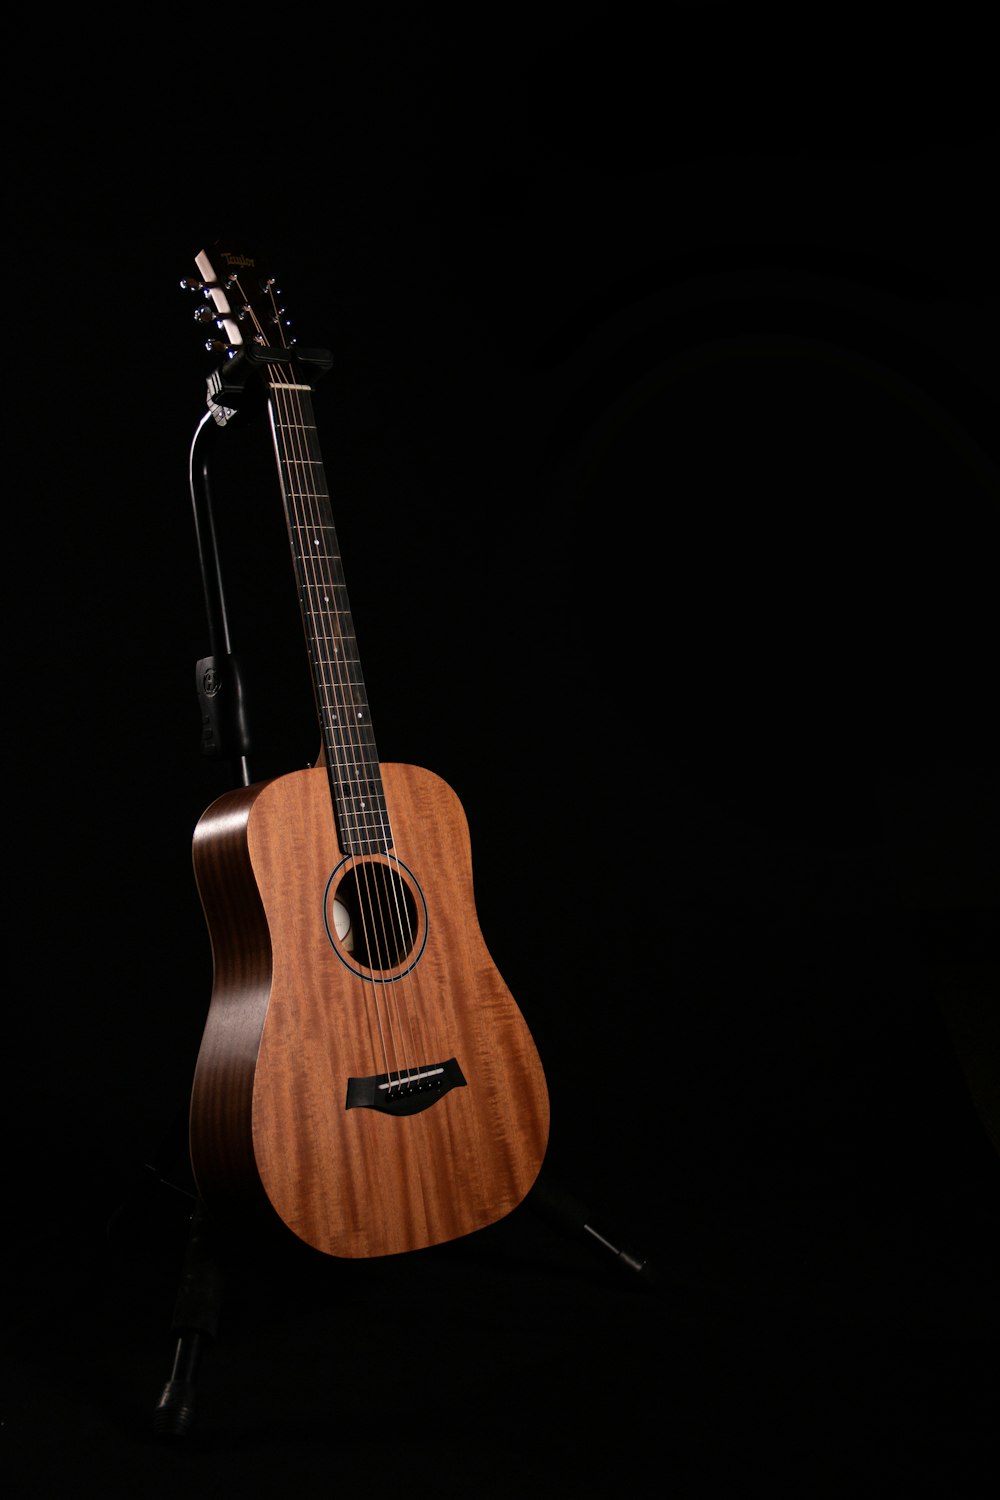 Guitarra acústica marrón